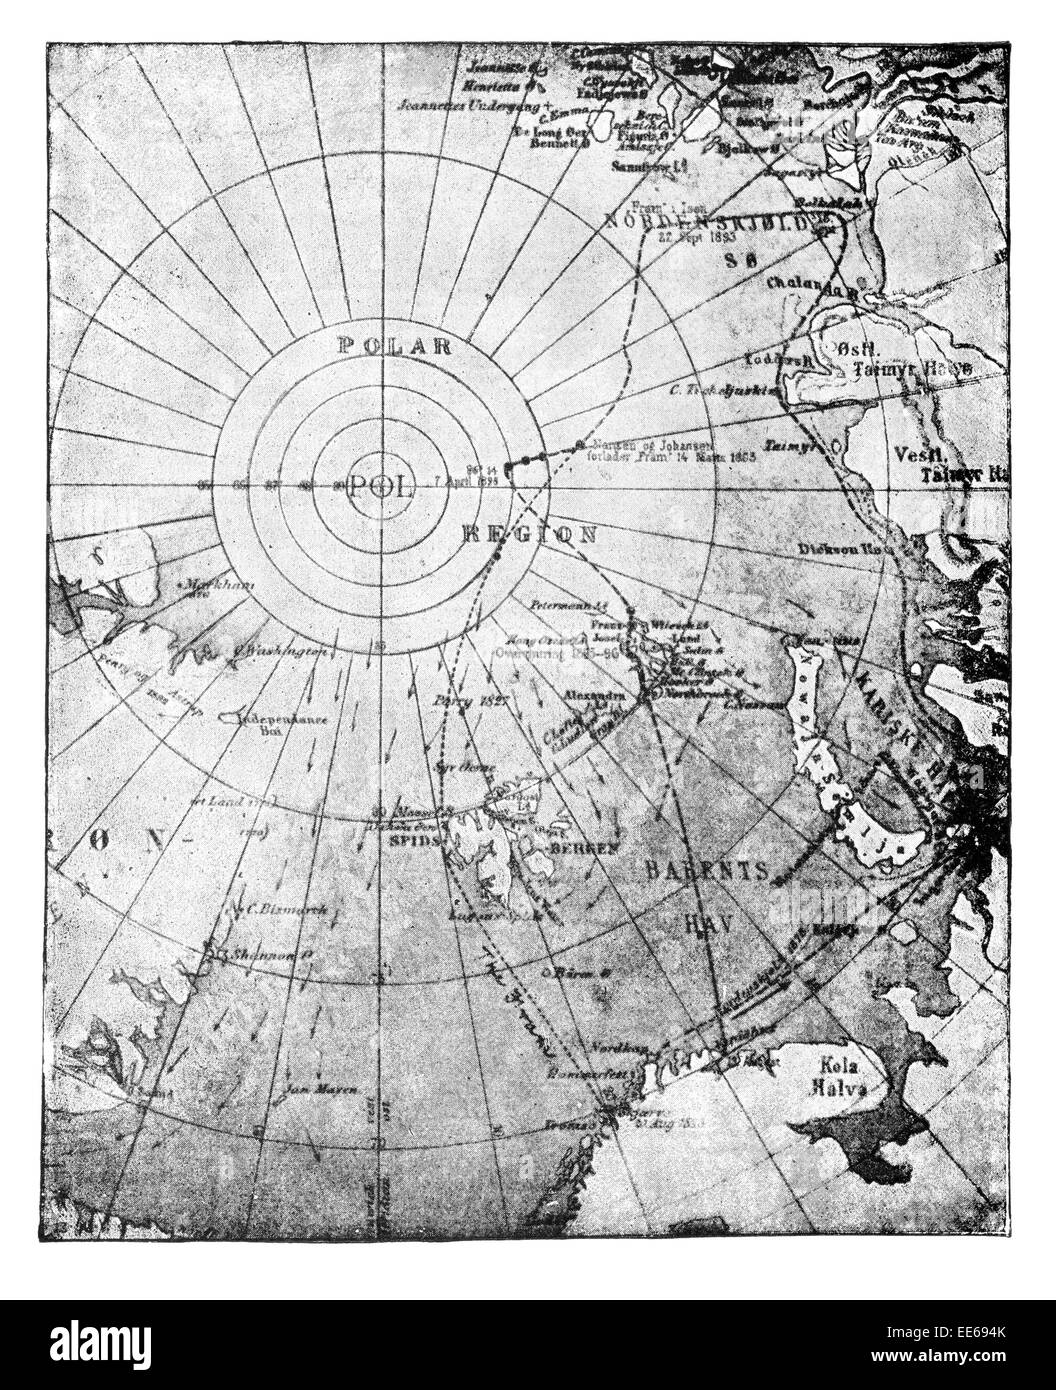 Map Fram Drift Sledge Journey Fridtjof Nansen Navigation Norwegian explorer scientist diplomat Nobel Peace Prize laureate Stock Photo